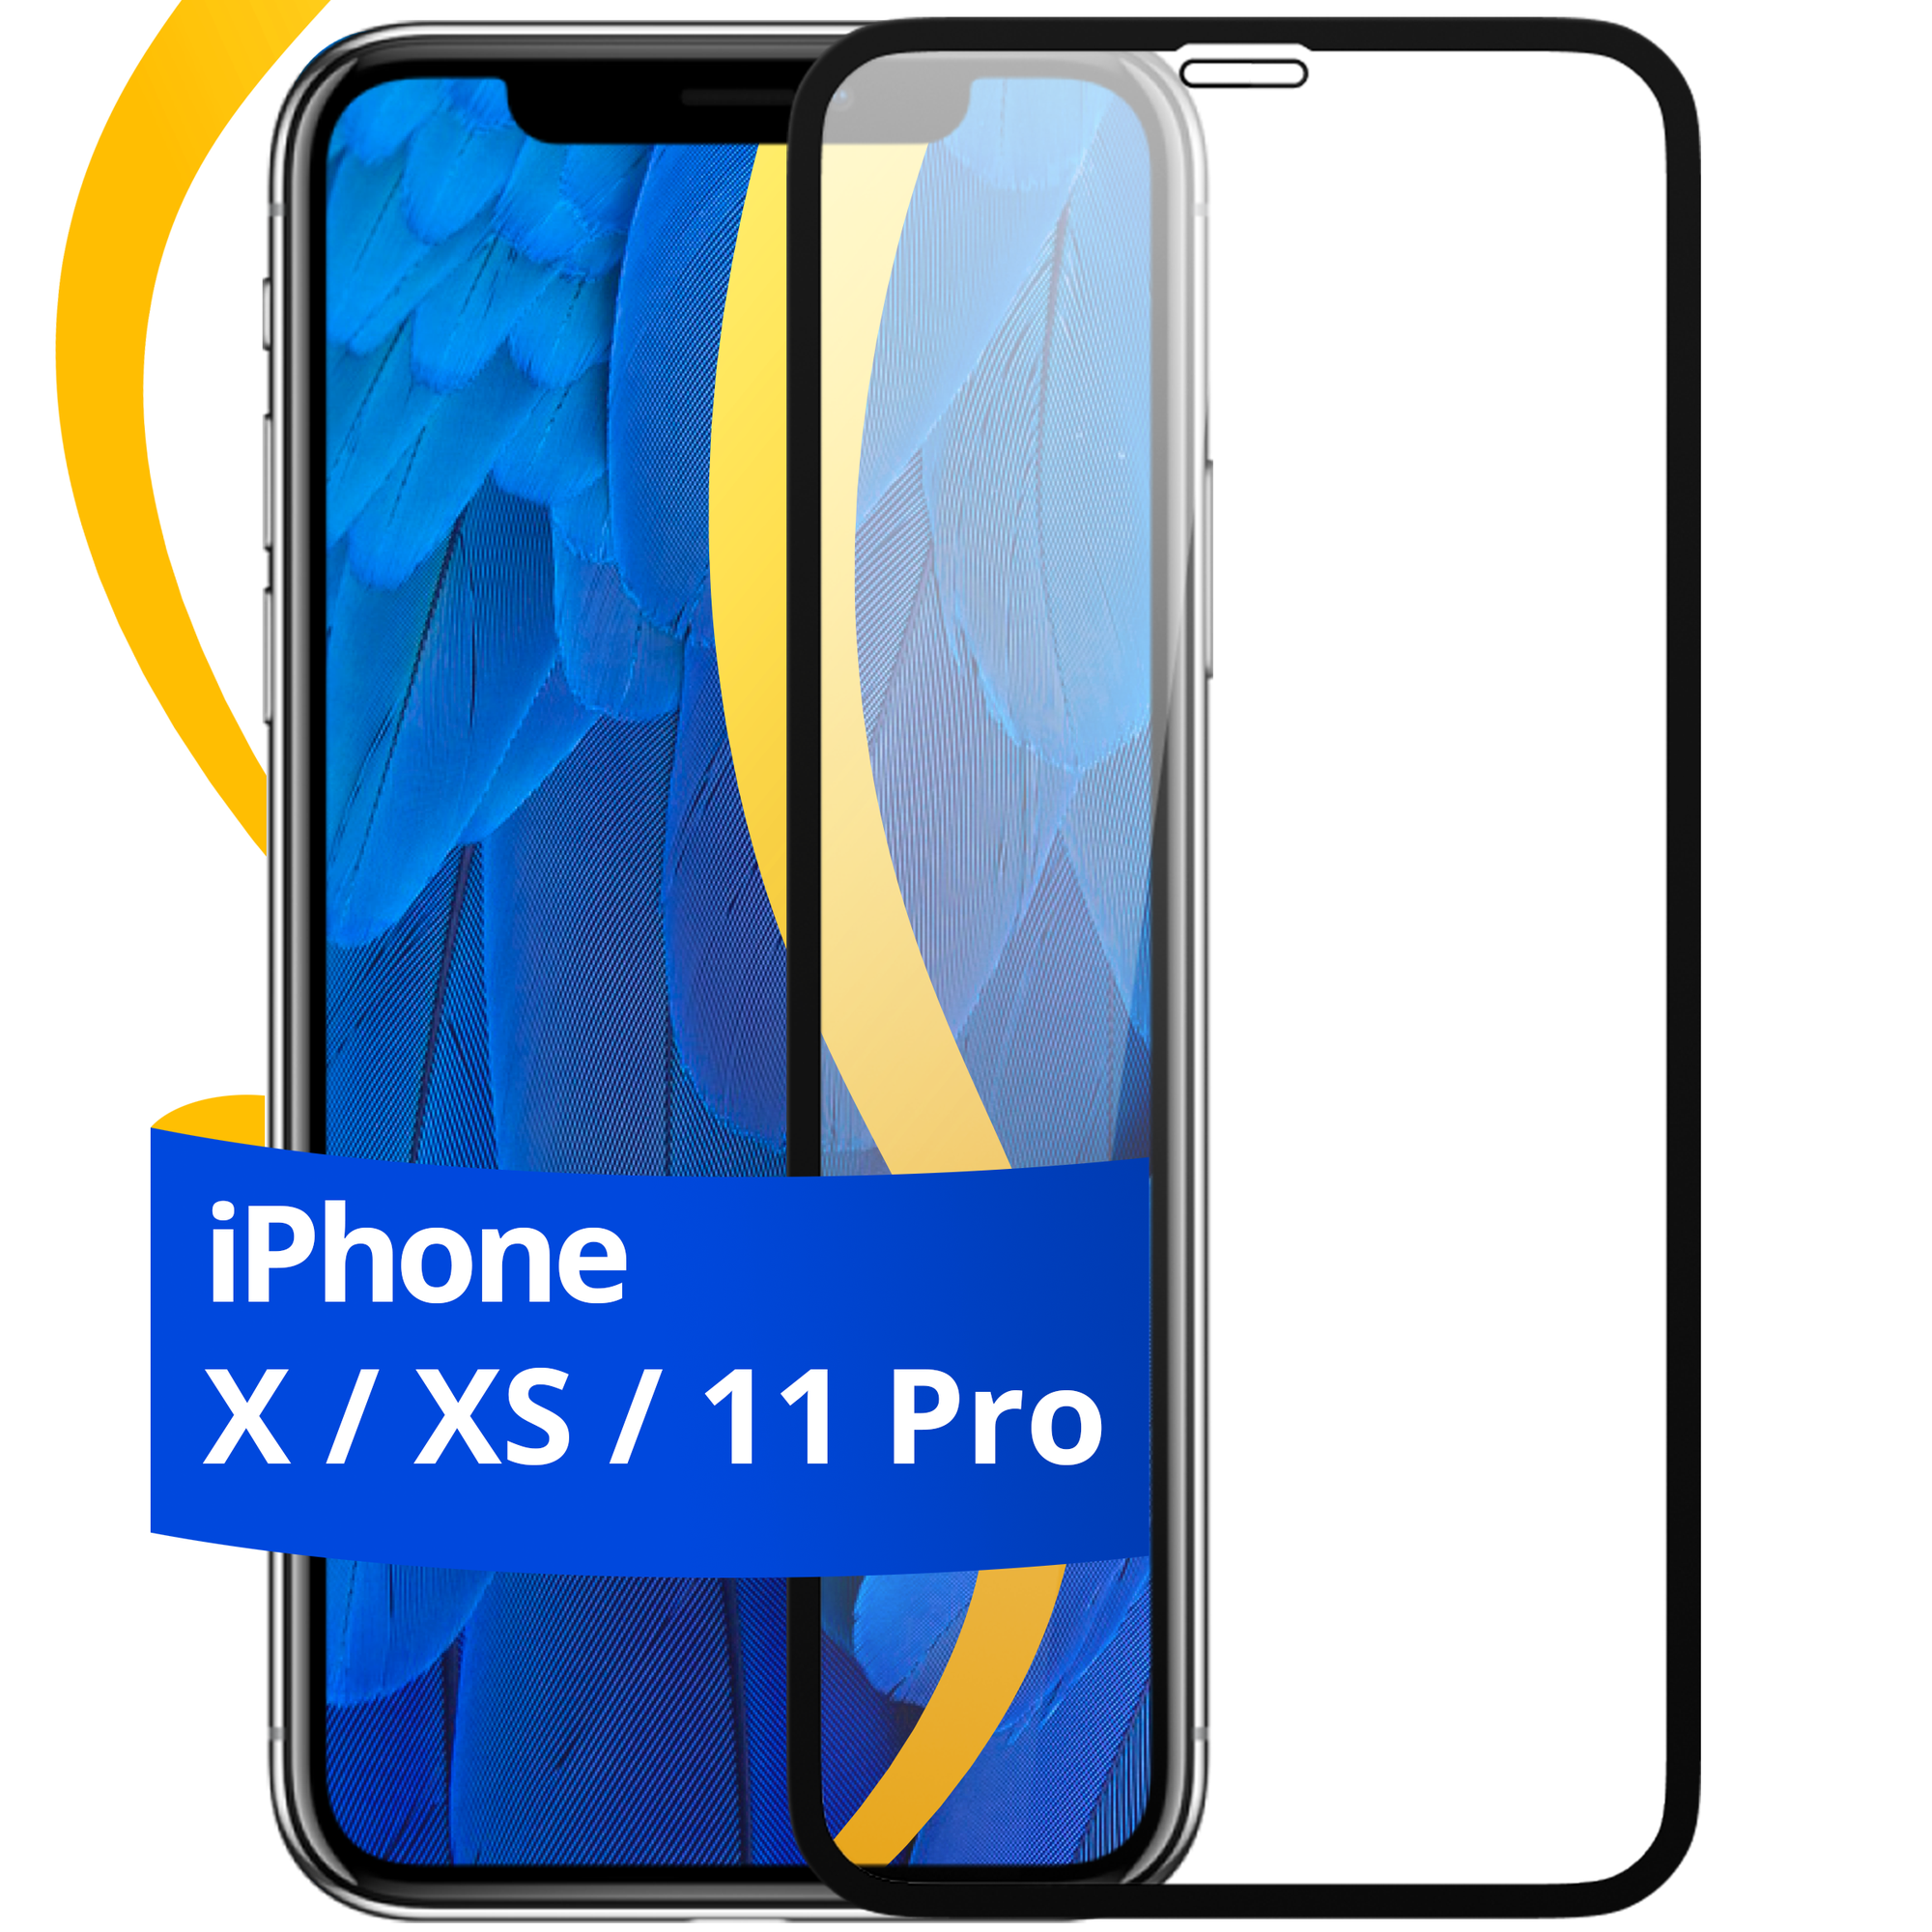 Глянцевое защитное стекло для телефона Apple iPhone X, XS и 11 Pro / Противоударное стекло с олеофобным покрытием на смартфон Эпл Айфон Х, ХС и 11 Про